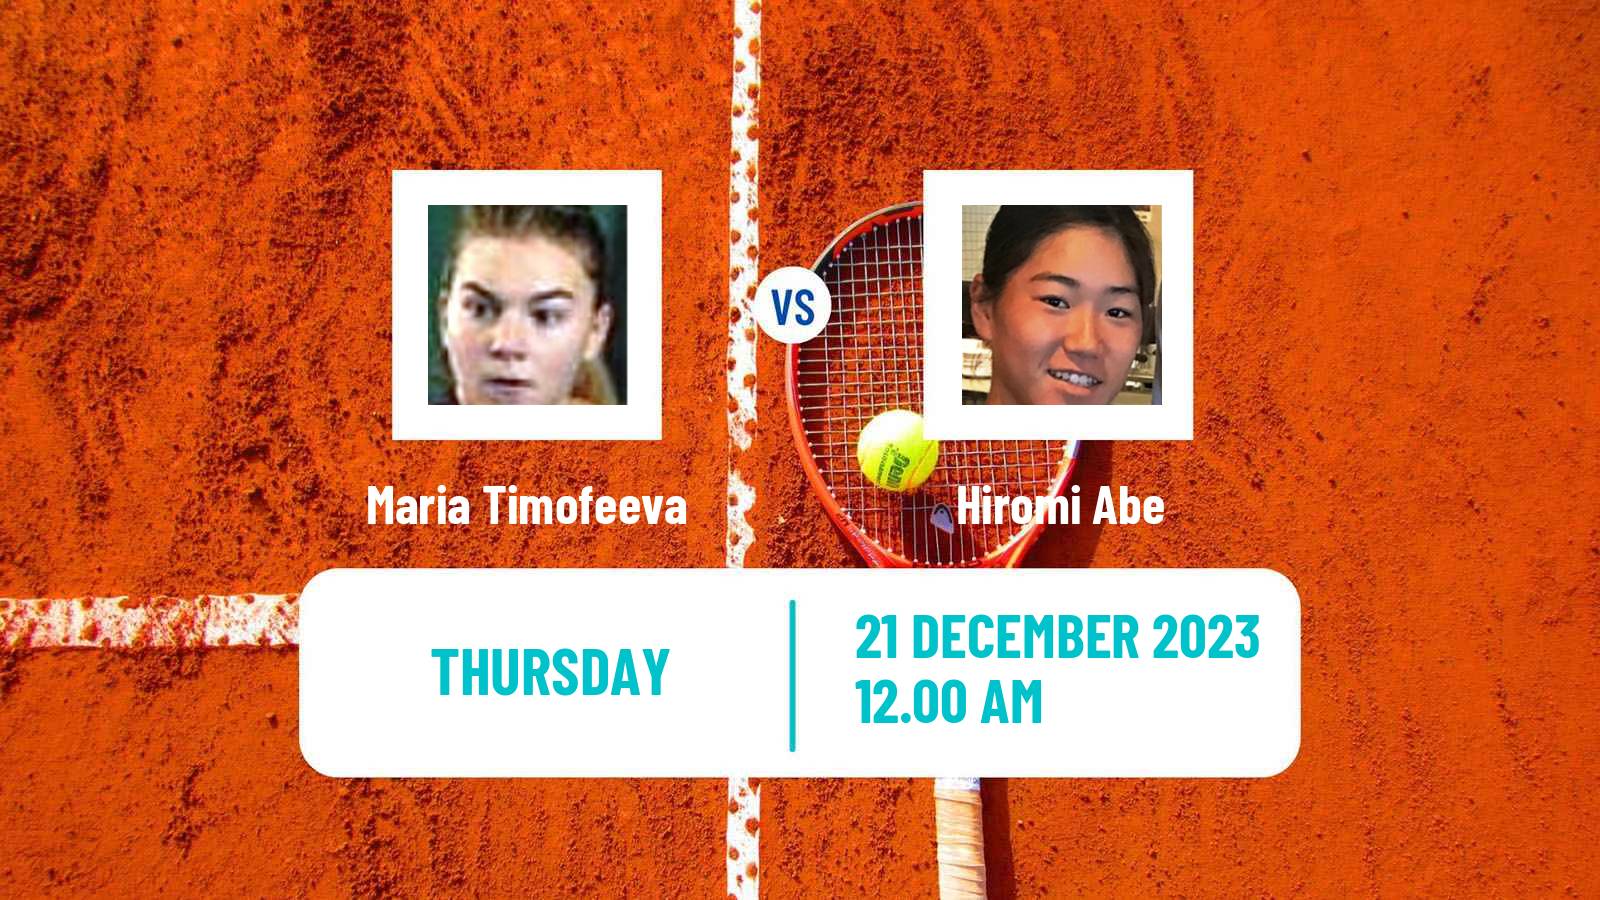 Tennis ITF W25 Solapur Women Maria Timofeeva - Hiromi Abe